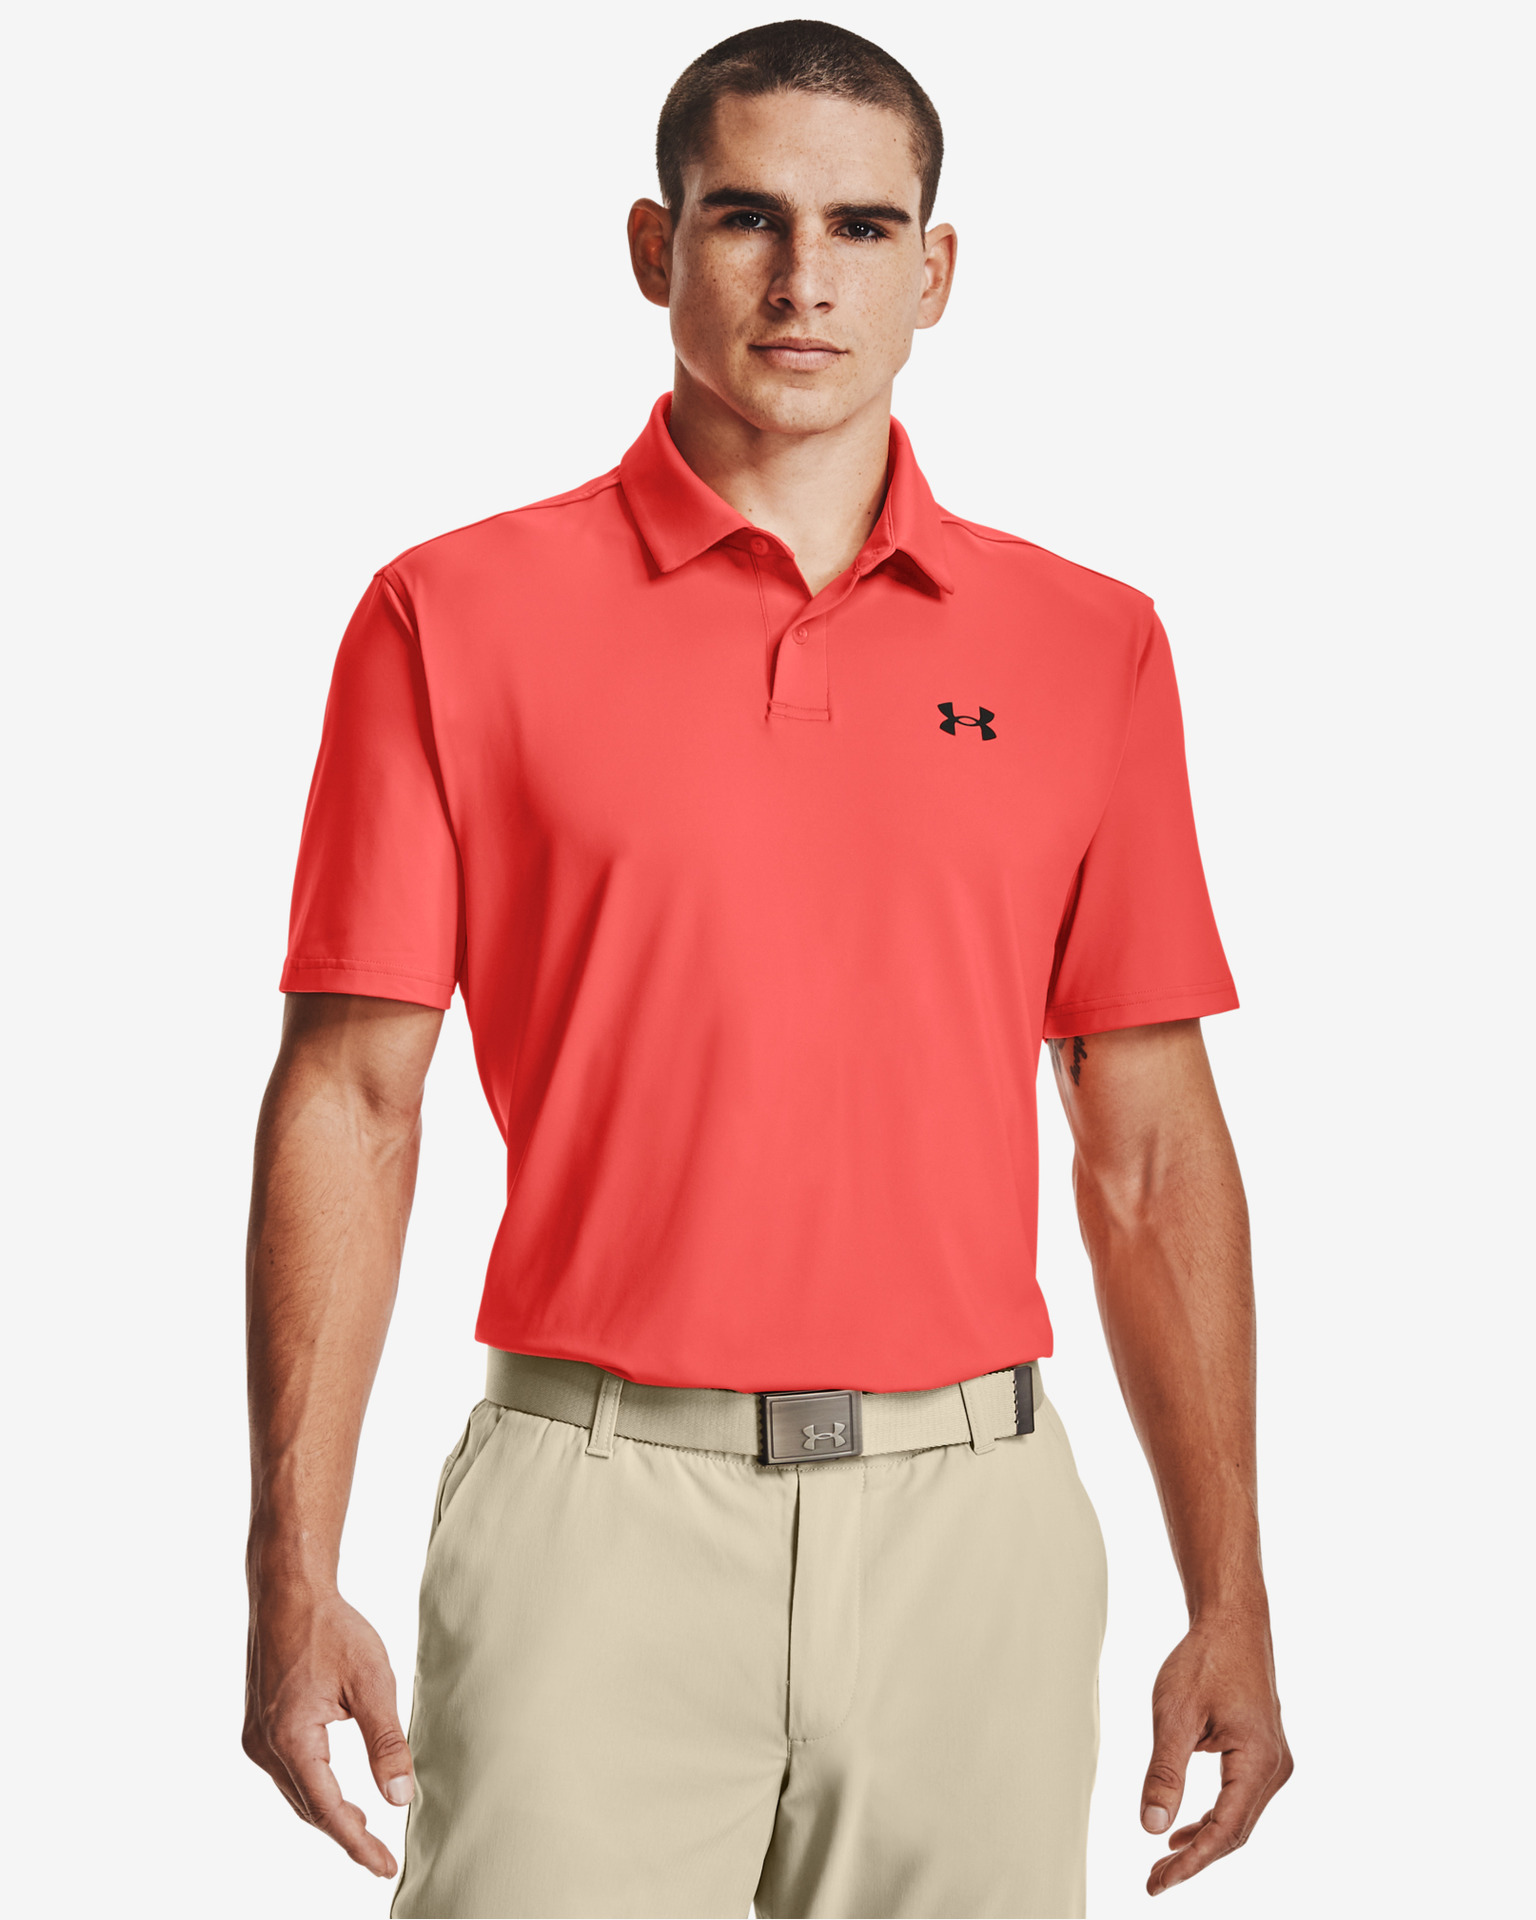 Under Armour Men's Curry Short Sleeve Golf Polo